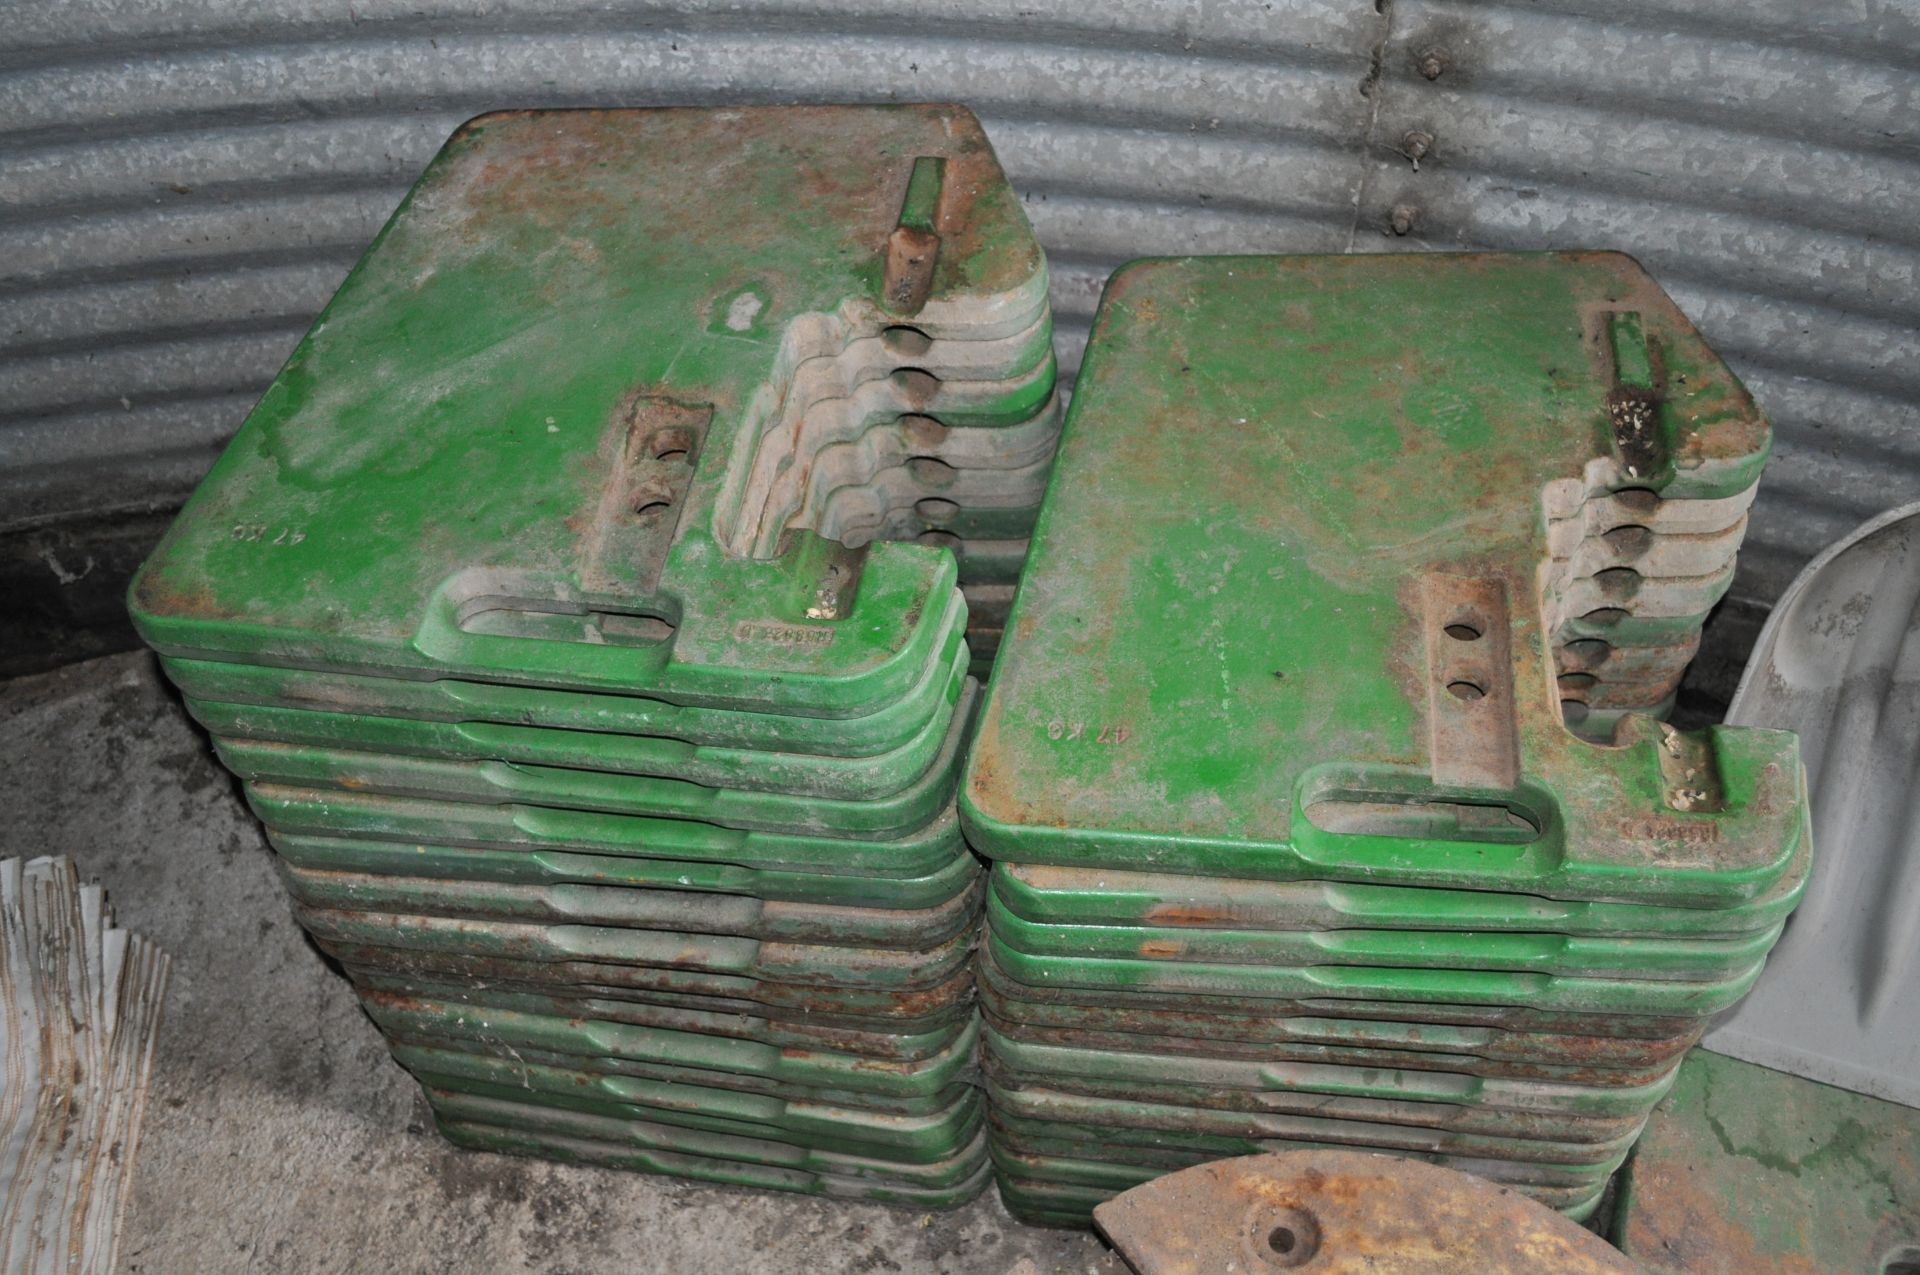 (12) John Deere suitcase weights